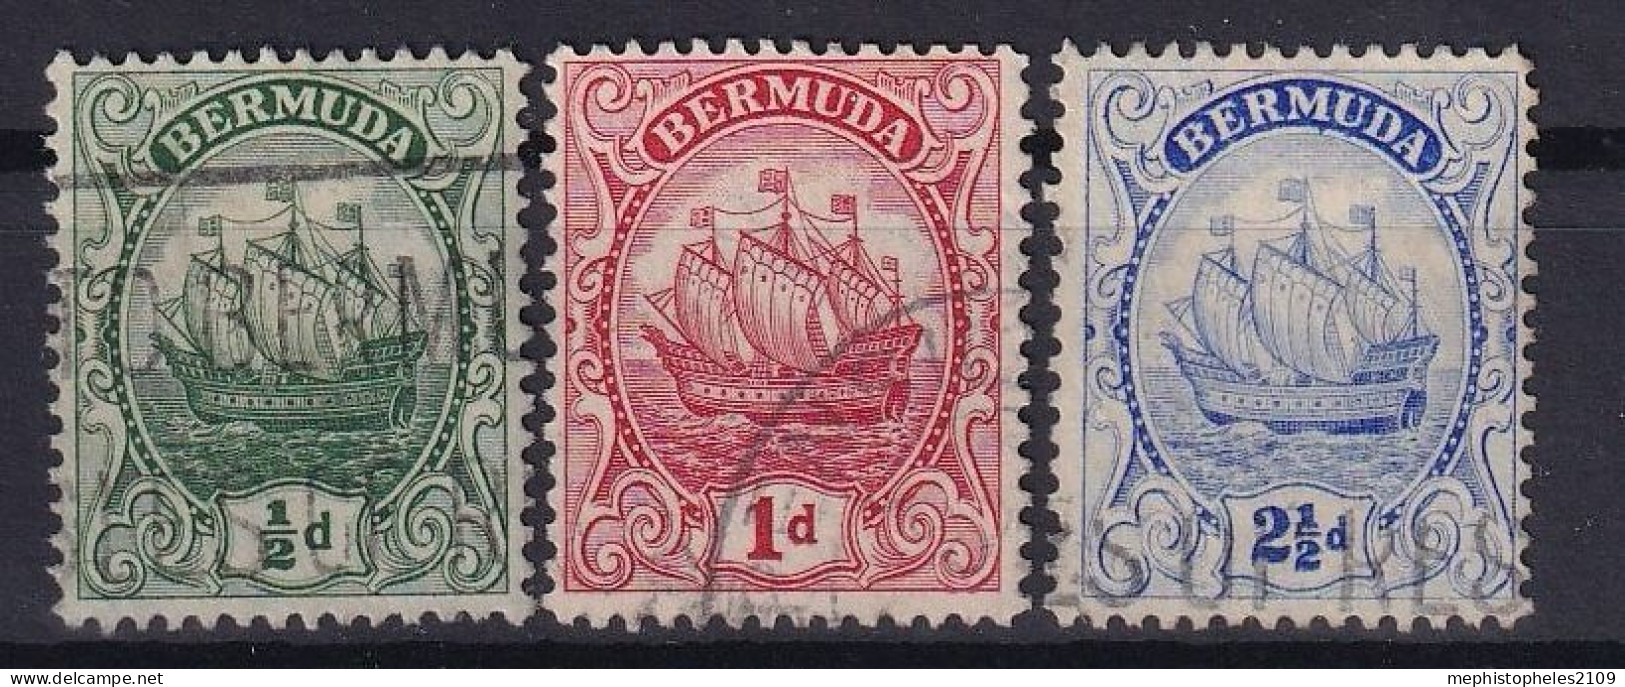 BERMUDA 1922 - Canceled - Sc# 82, 83, 87 - Bermudes